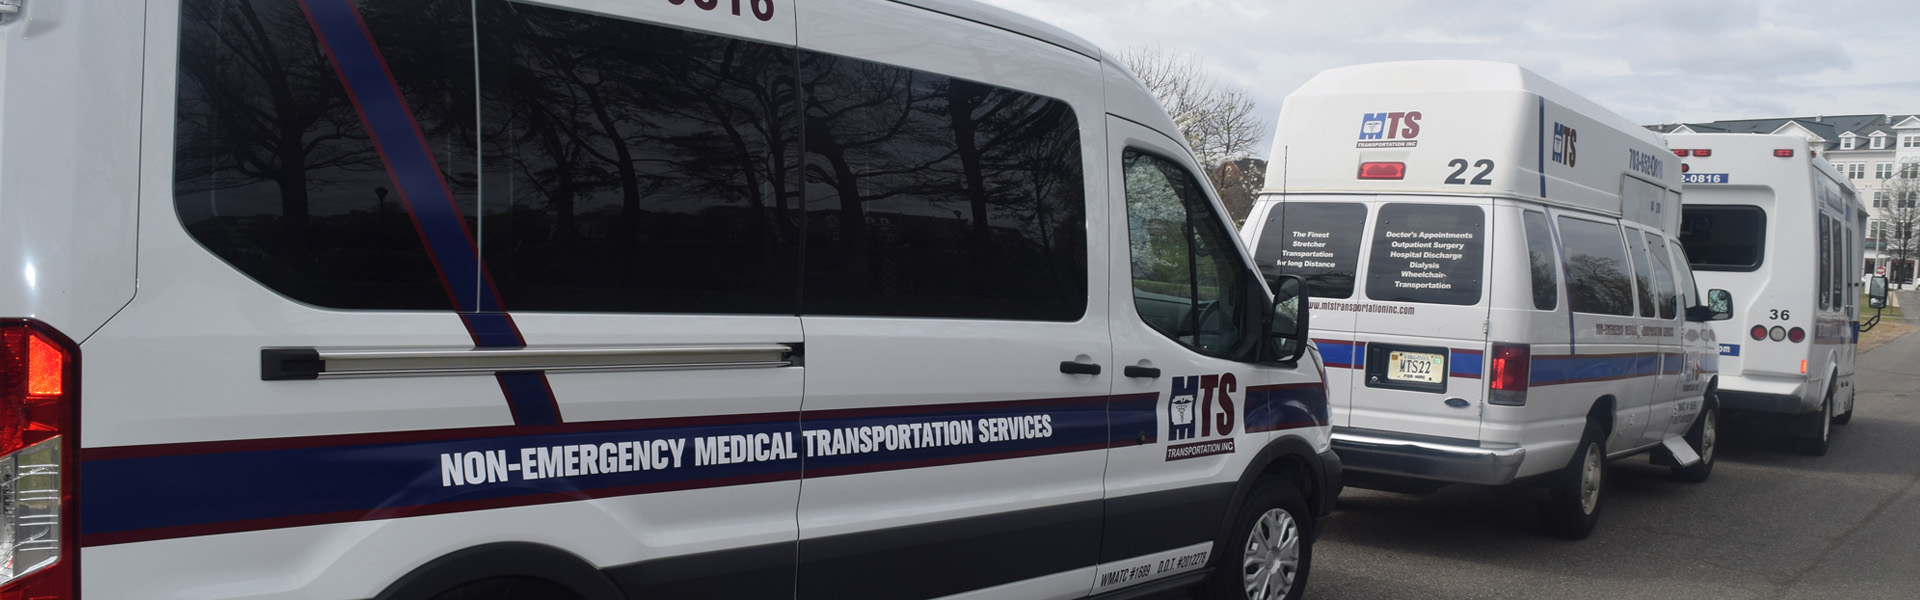 D.C. Ambulances Will No Longer Transport Patients For Non-Emergencies